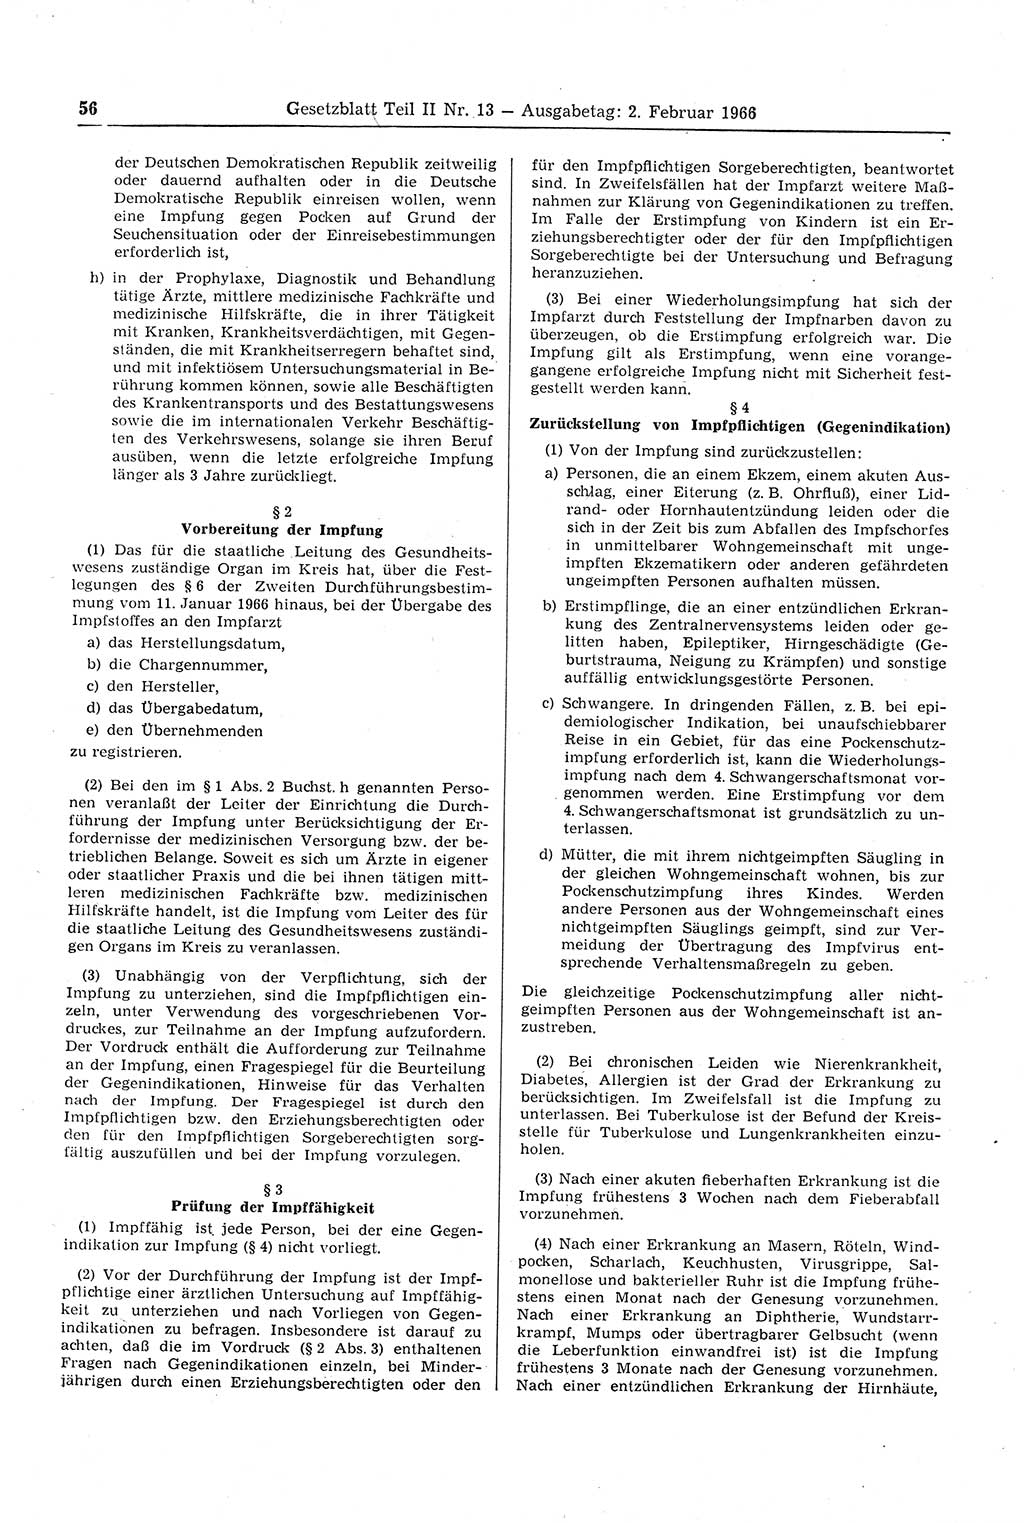 Gesetzblatt (GBl.) der Deutschen Demokratischen Republik (DDR) Teil ⅠⅠ 1966, Seite 56 (GBl. DDR ⅠⅠ 1966, S. 56)